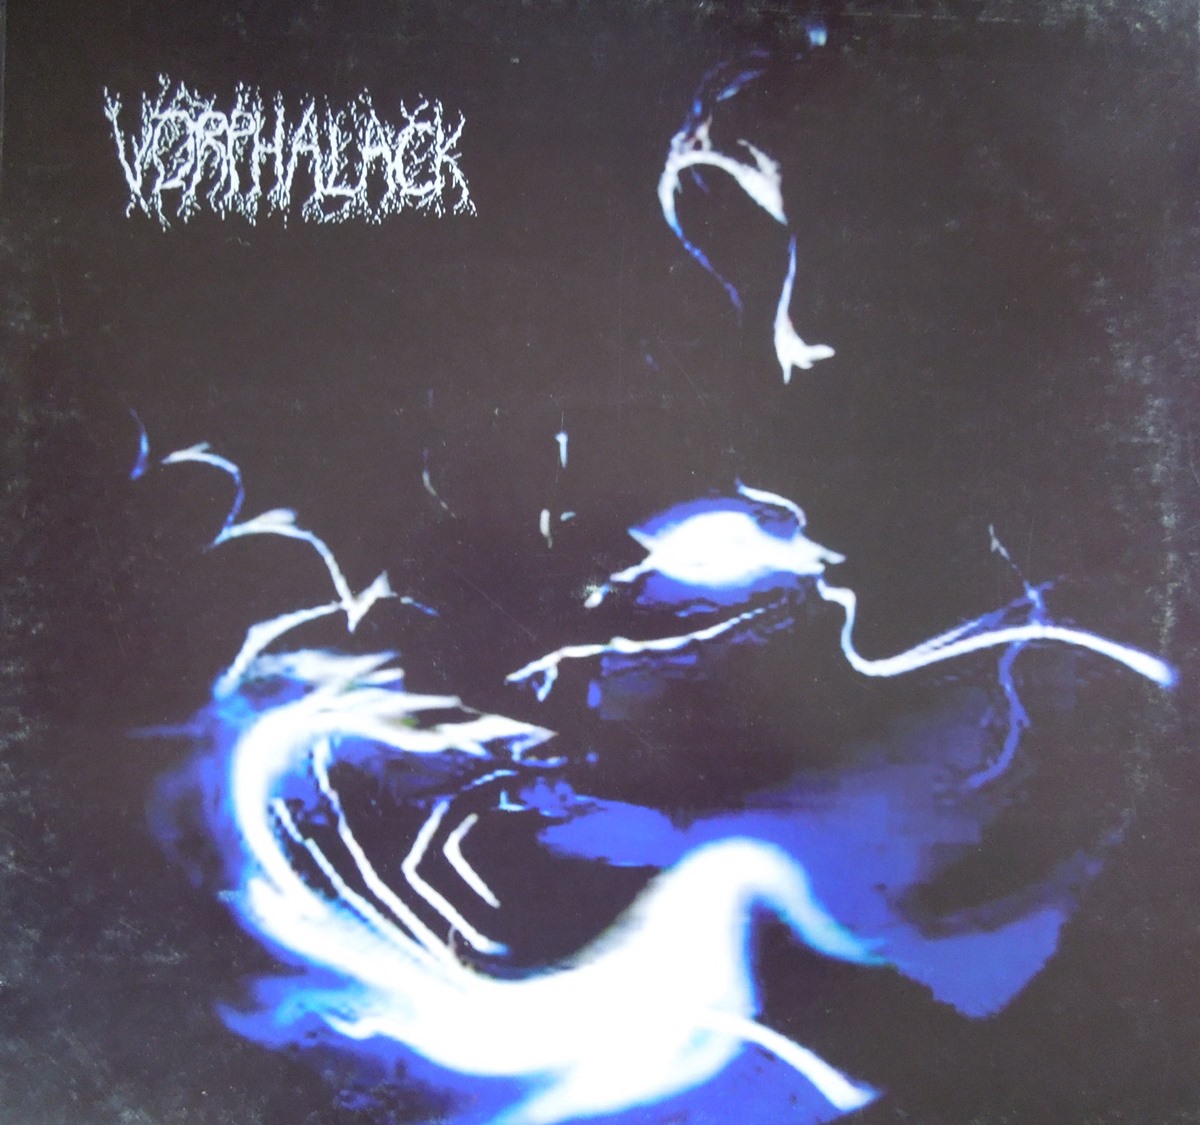 Vorphalack - In Memory...